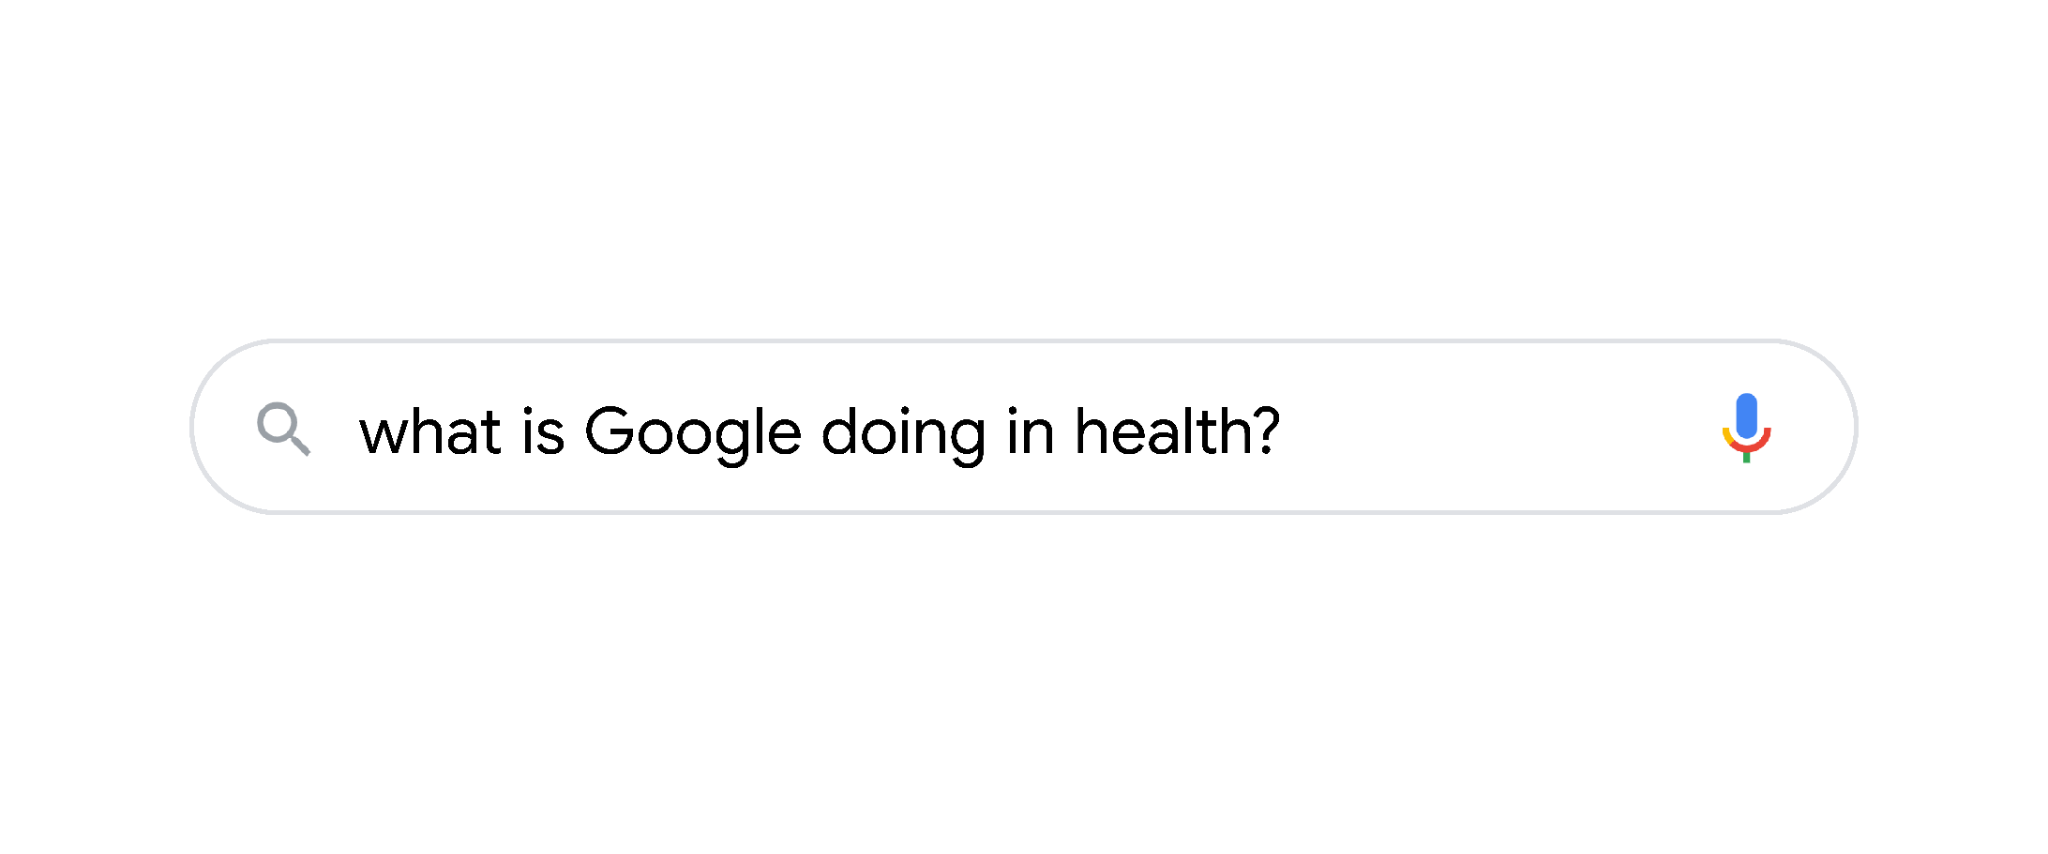 Sự kiện Google Health – Kiểm tra sức khoẻ: Cách Google giúp mọi người  sống lành mạnh hơn